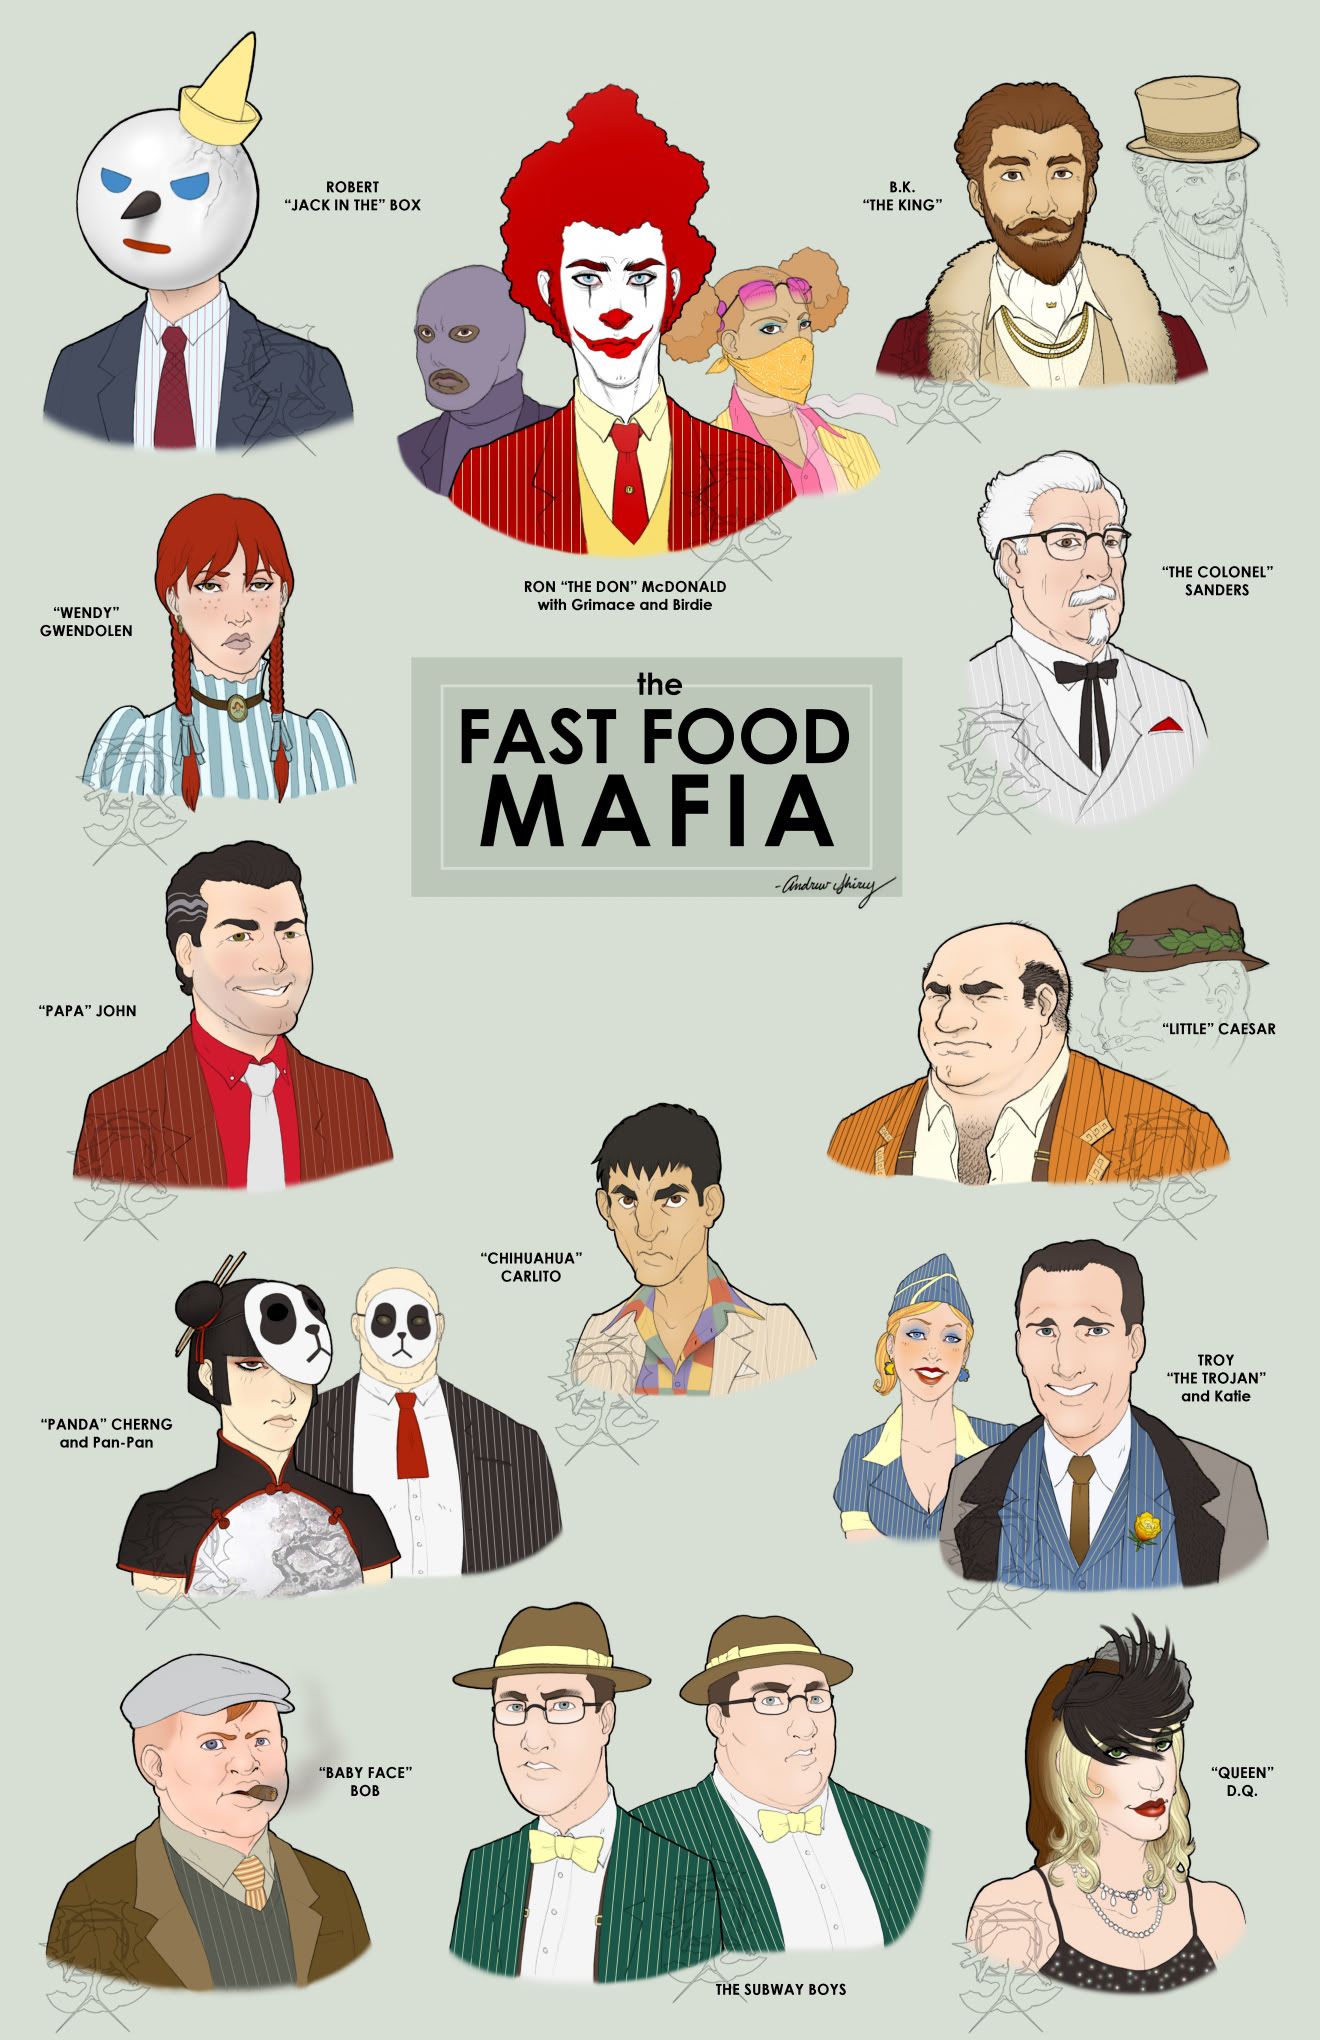 The Fast Food Mafia.